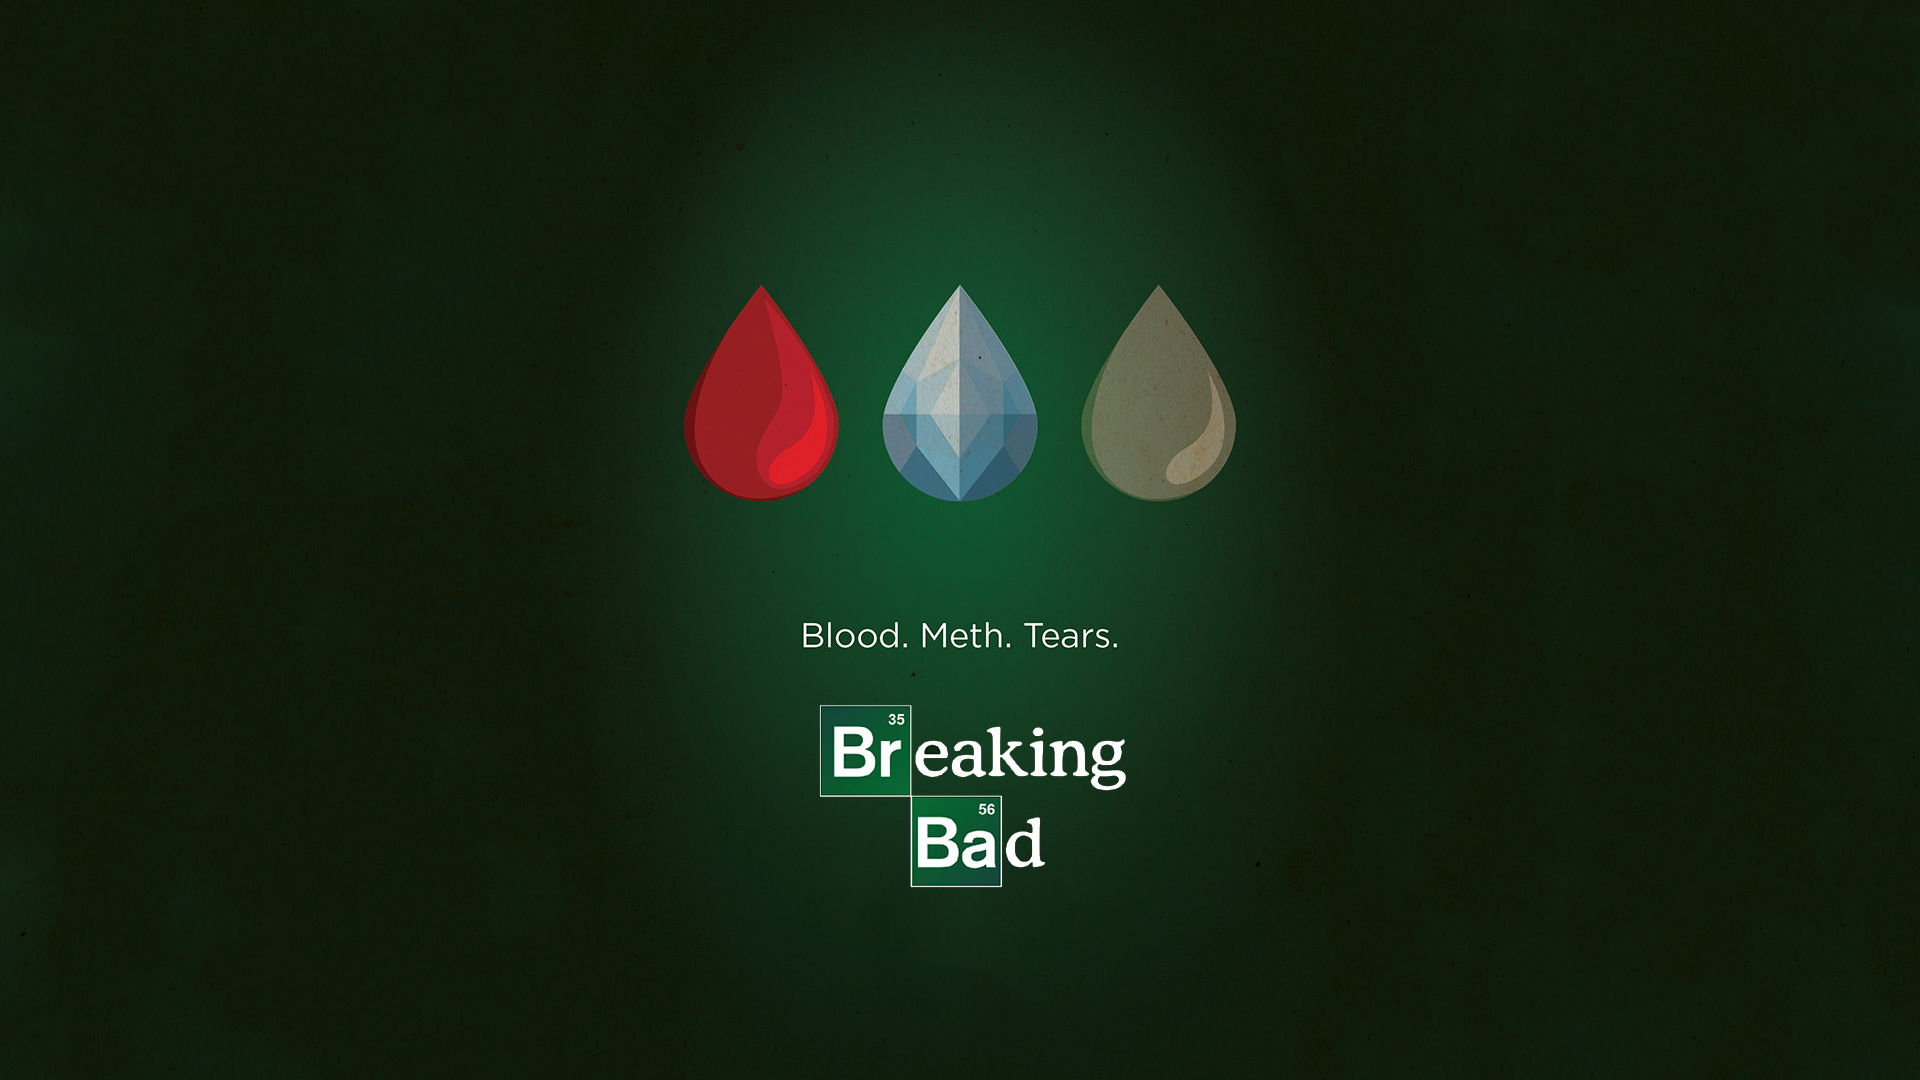 Breaking Bad Blood, Meth, Tears HD Wallpaper. Background Image